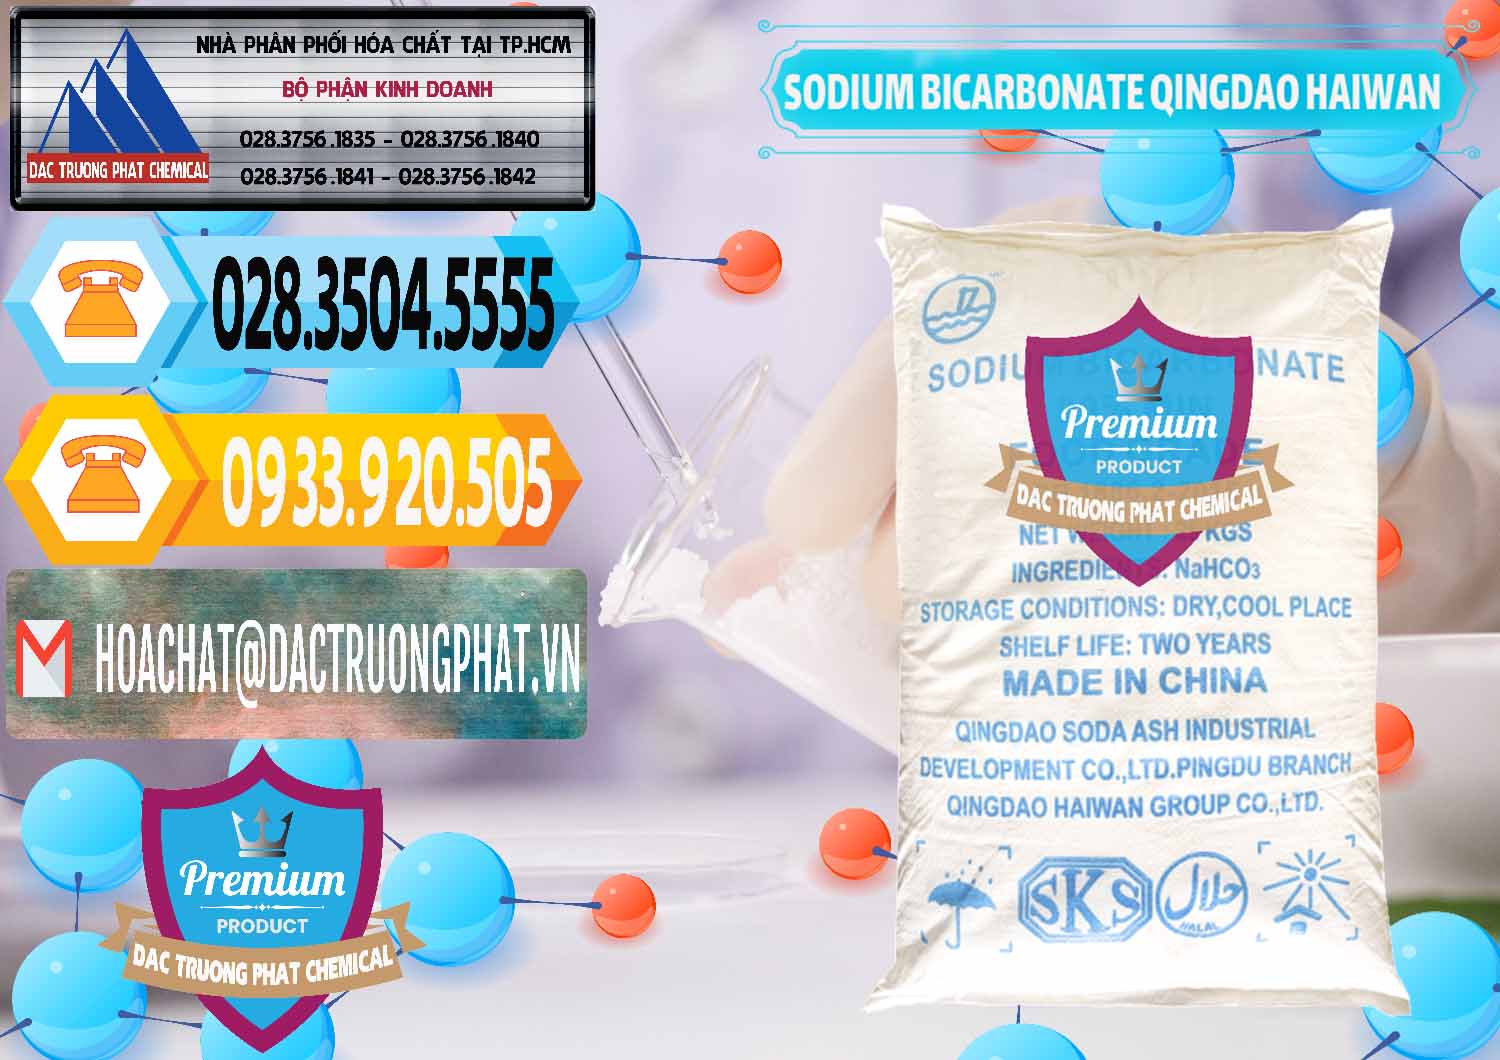 Phân phối & bán Sodium Bicarbonate – Bicar NaHCO3 Food Grade Qingdao Haiwan Trung Quốc China - 0258 - Nơi phân phối - cung ứng hóa chất tại TP.HCM - hoachattayrua.net